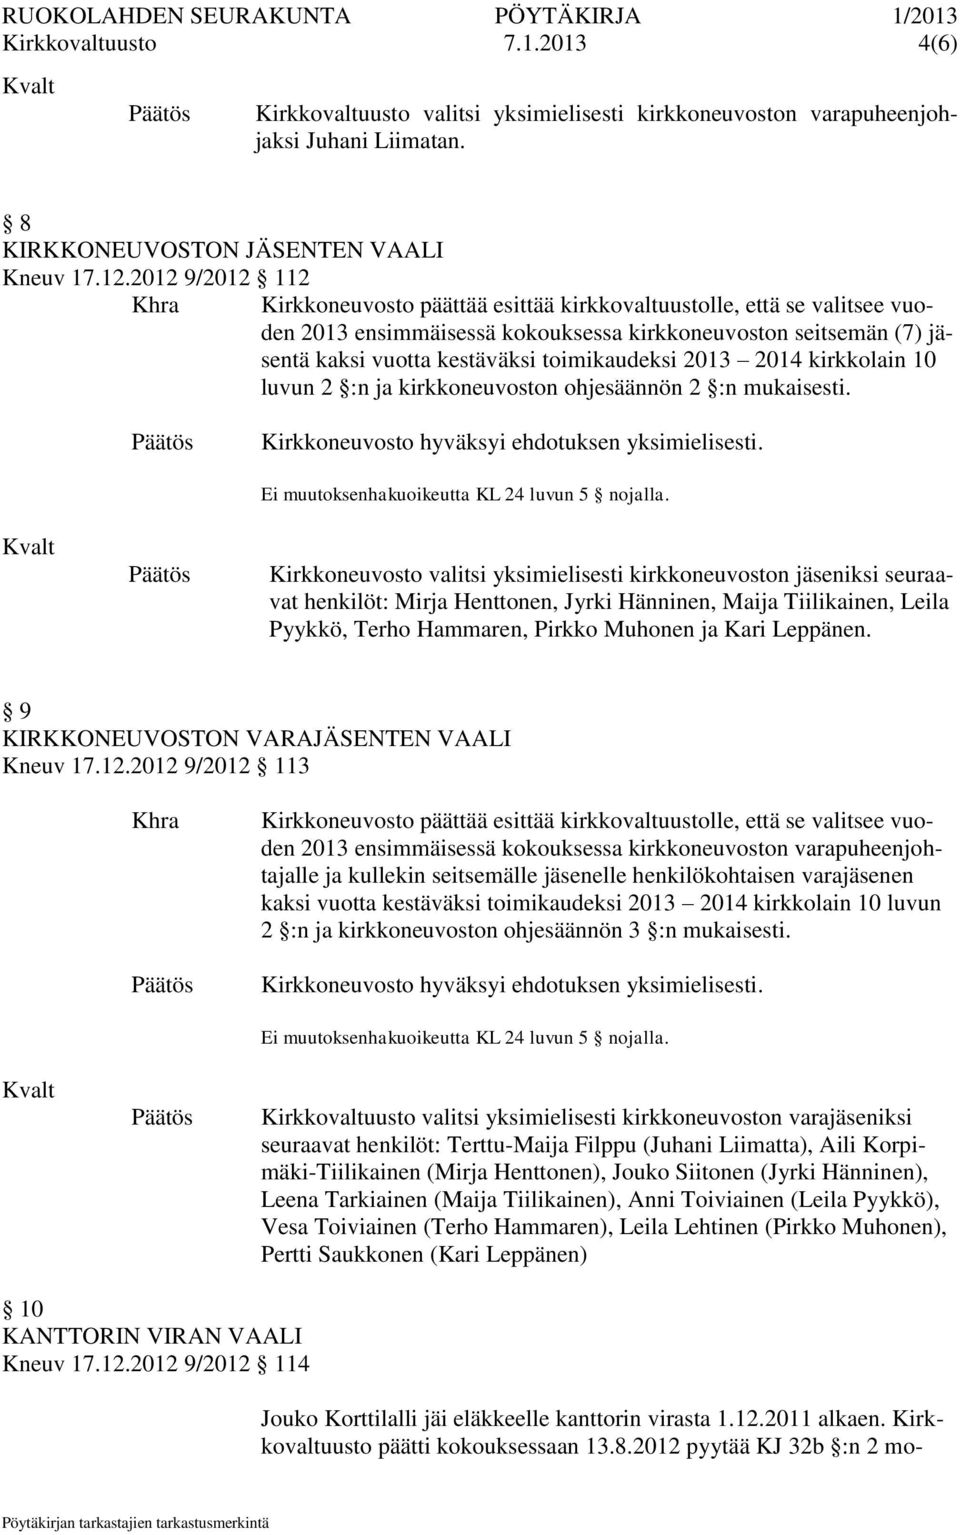 Kirkkoneuvosto valitsi yksimielisesti kirkkoneuvoston iksi seuraavat henkilöt: Mirja Henttonen, Jyrki Hänninen, Maija Tiilikainen, Leila Pyykkö, Terho Hammaren, Pirkko Muhonen ja Kari Leppänen.